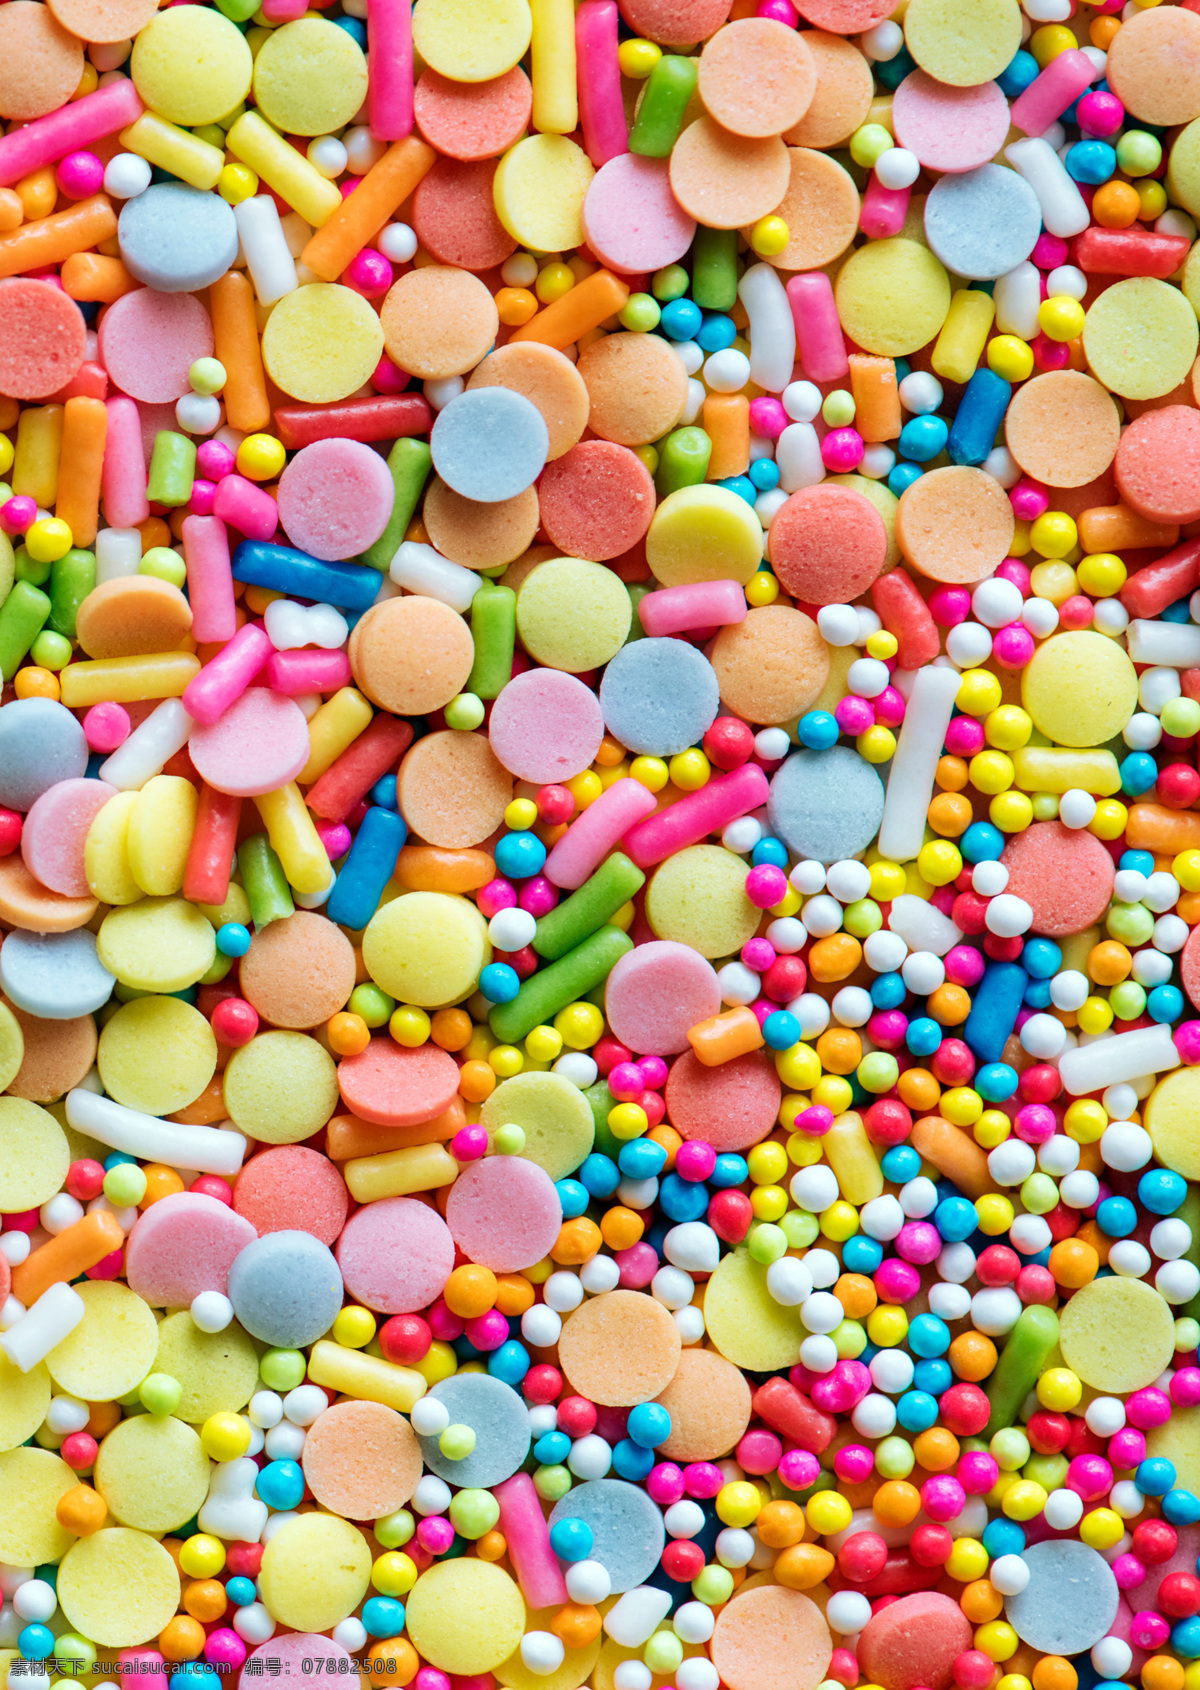 彩色糖果 壁纸 糖果素材 糖果壁纸